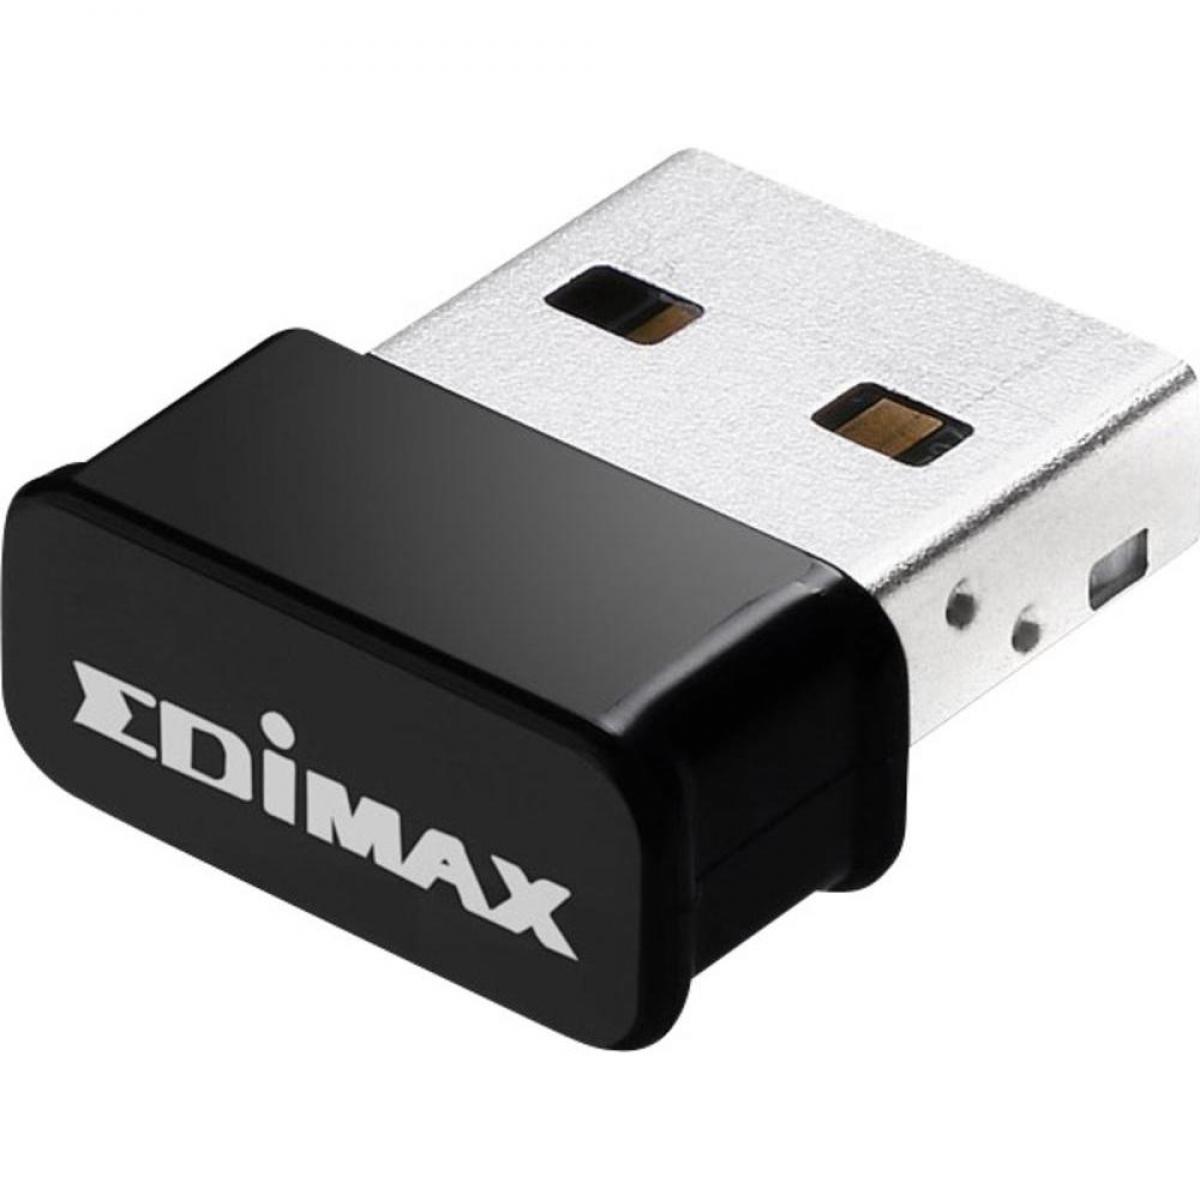 Edimax - Edimax EW-7822ULC - Modem / Routeur / Points d'accès